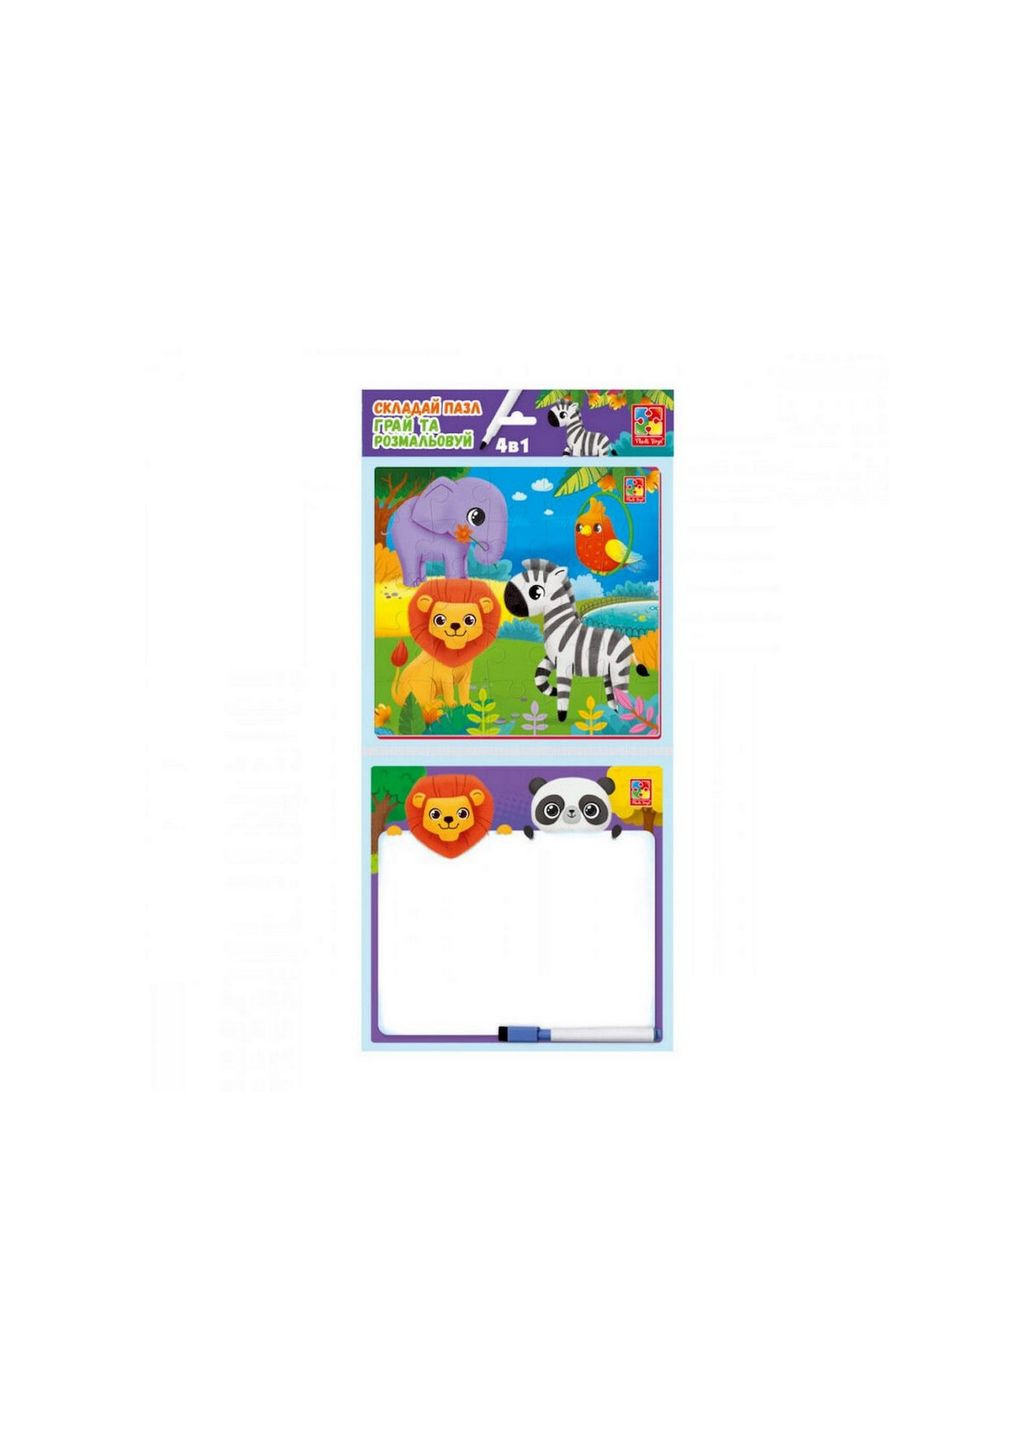 Развивающий набор 4 в 1 "Зоопарк" VT2002-02 пазл, раскраска, маркер Vladi toys (289458423)